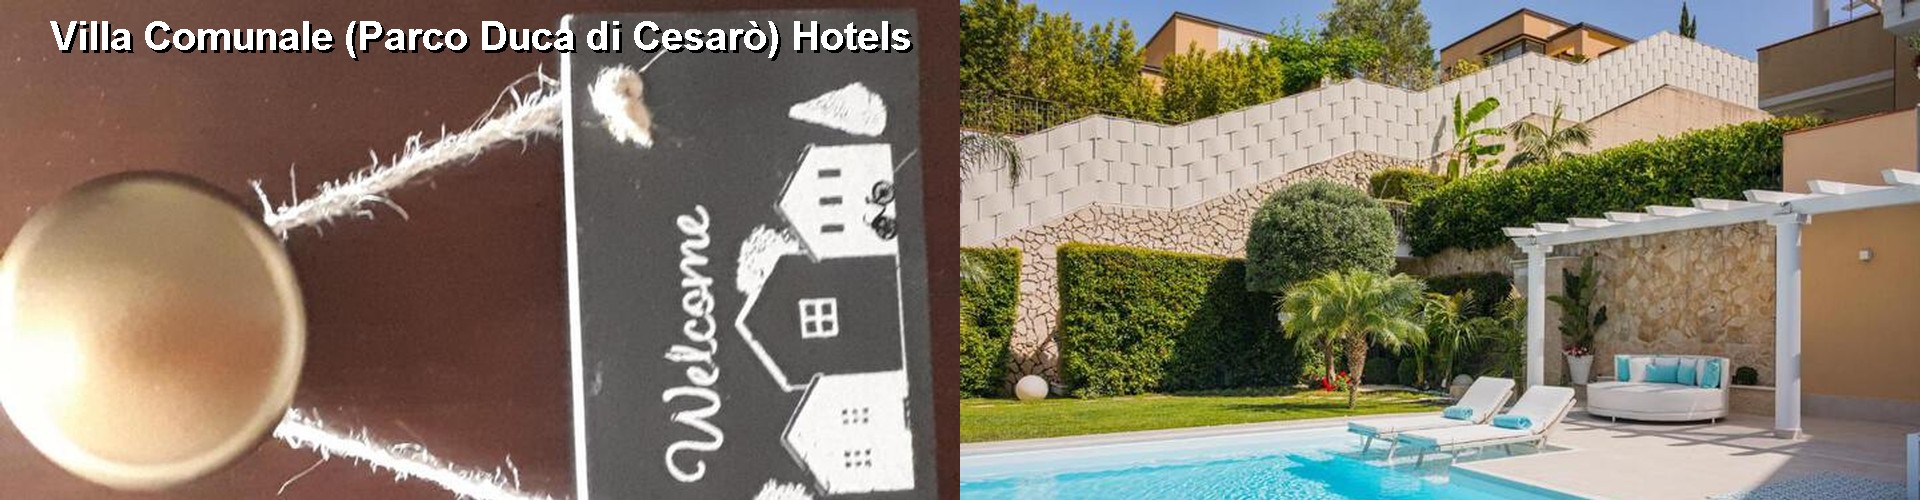 5 Best Hotels near Villa Comunale (Parco Duca di Cesarò)